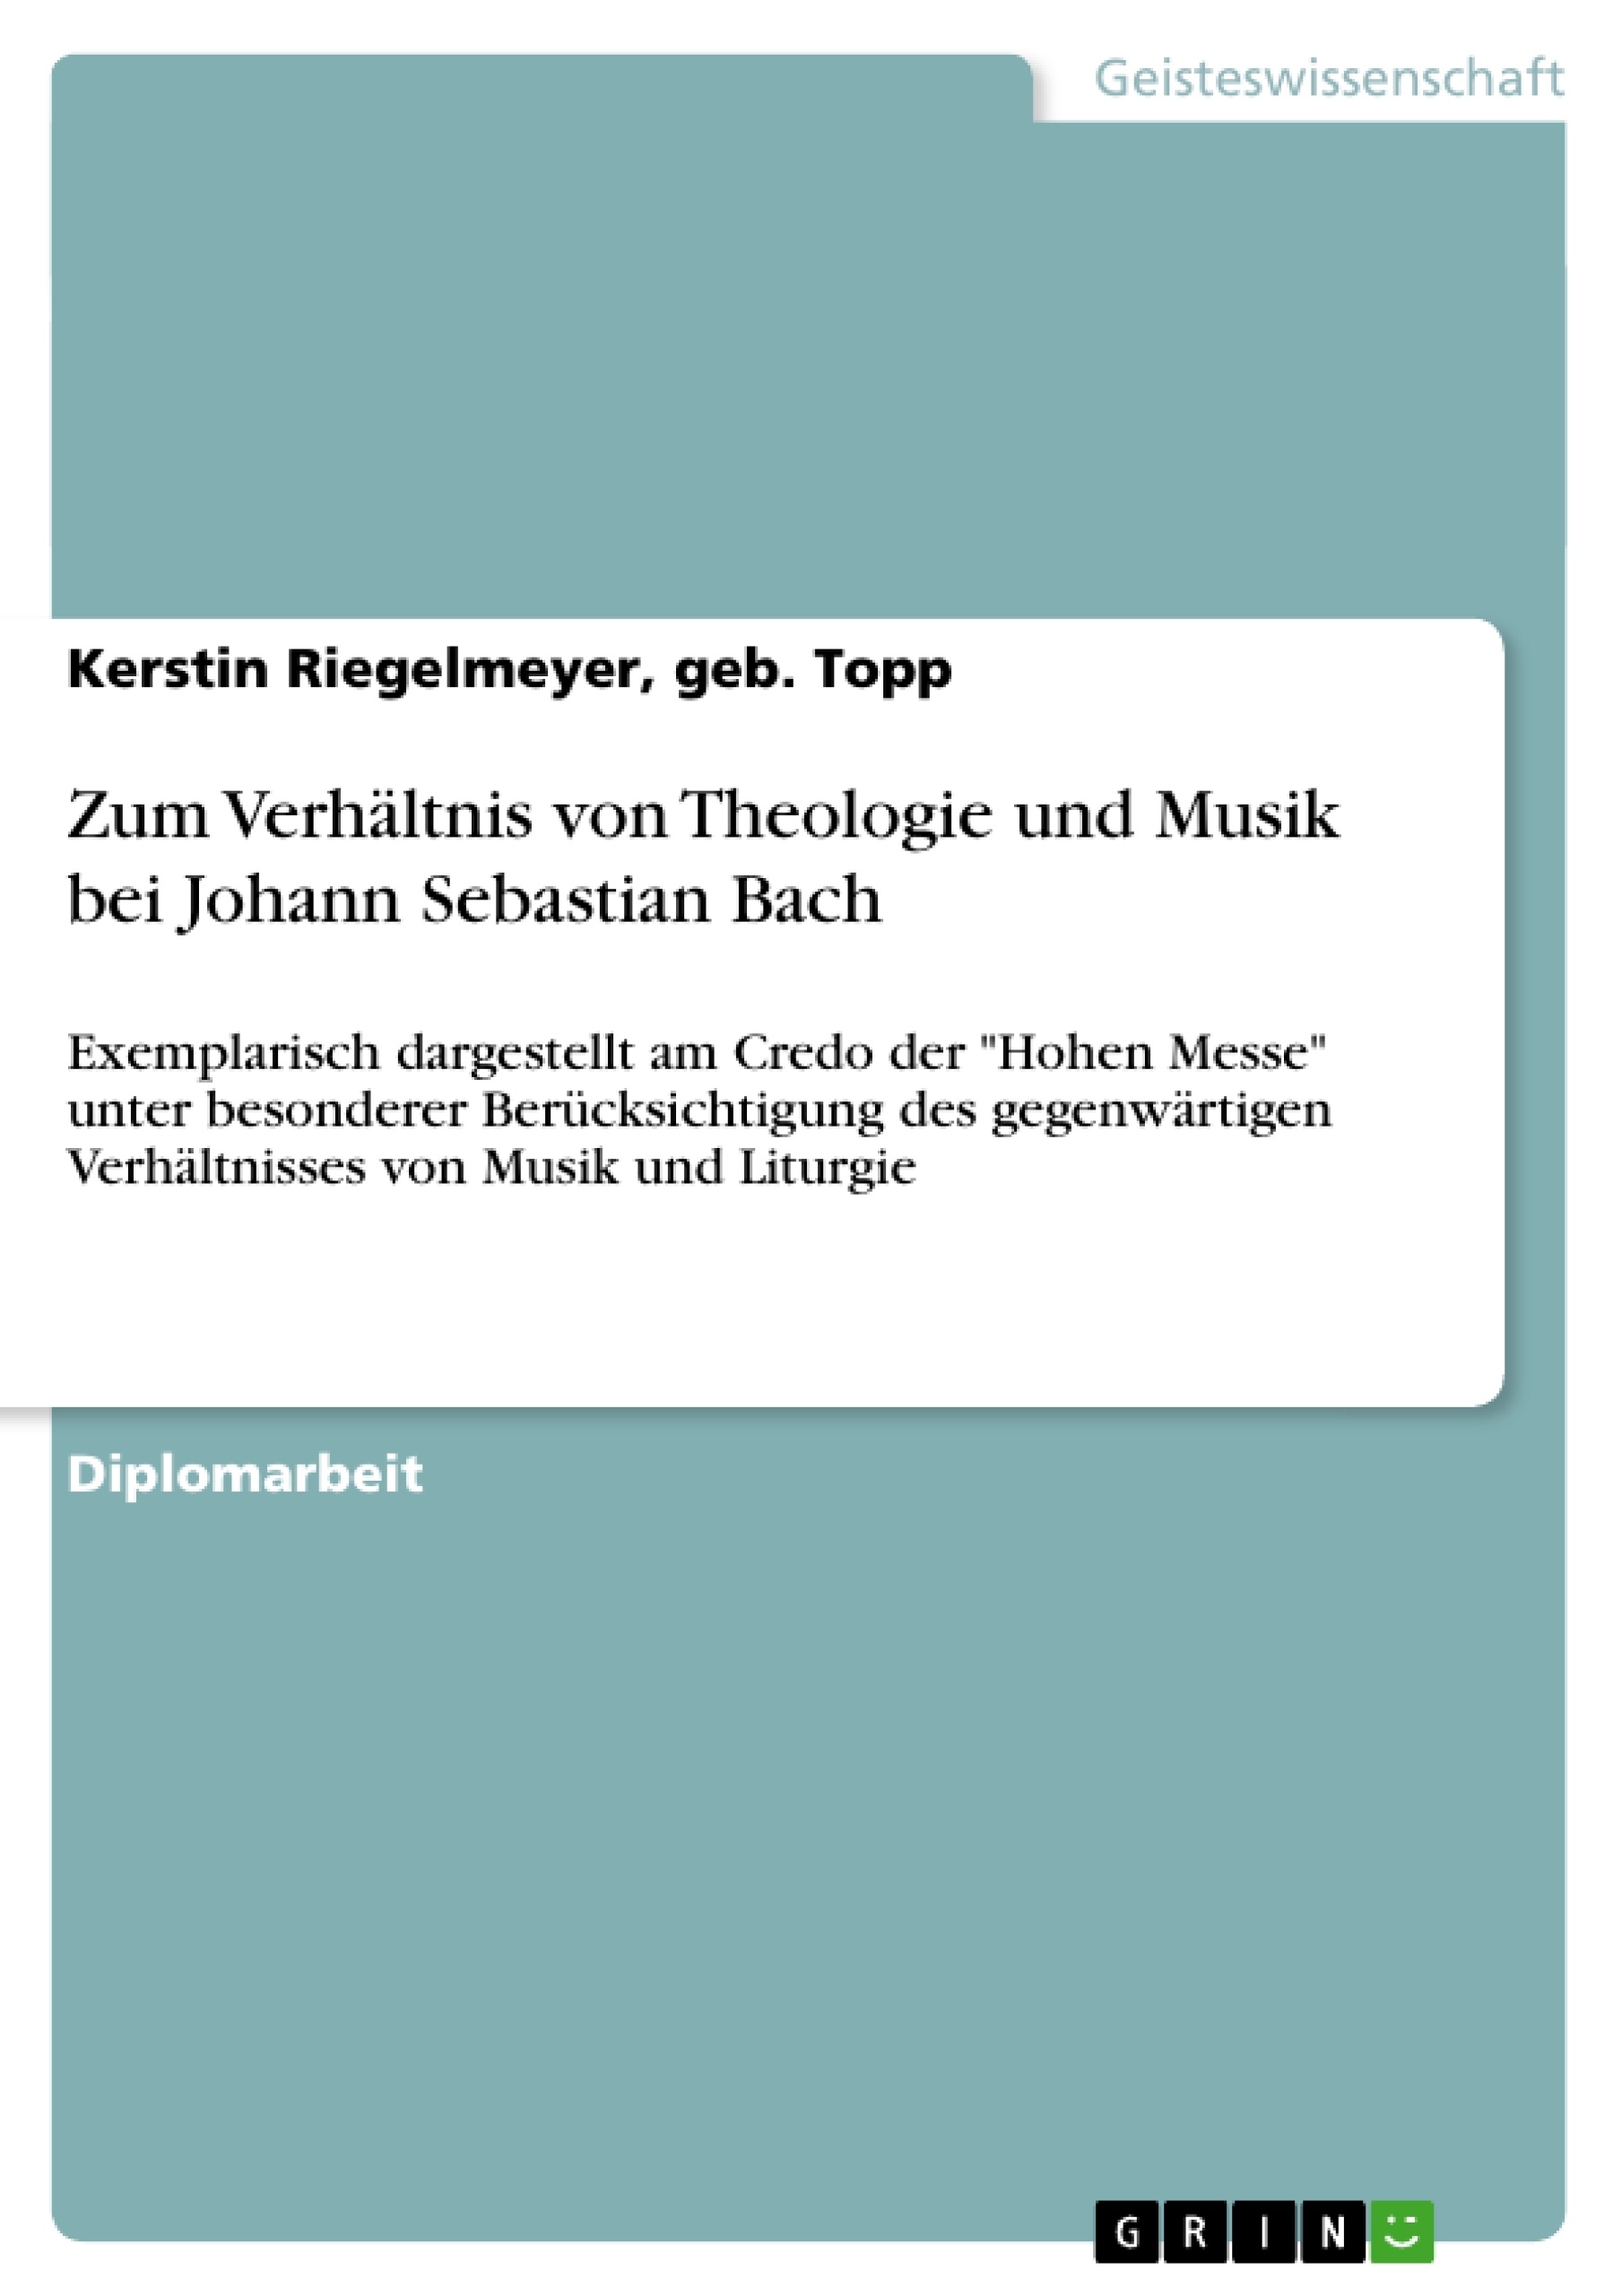 Title: Zum Verhältnis von Theologie und Musik bei Johann Sebastian Bach